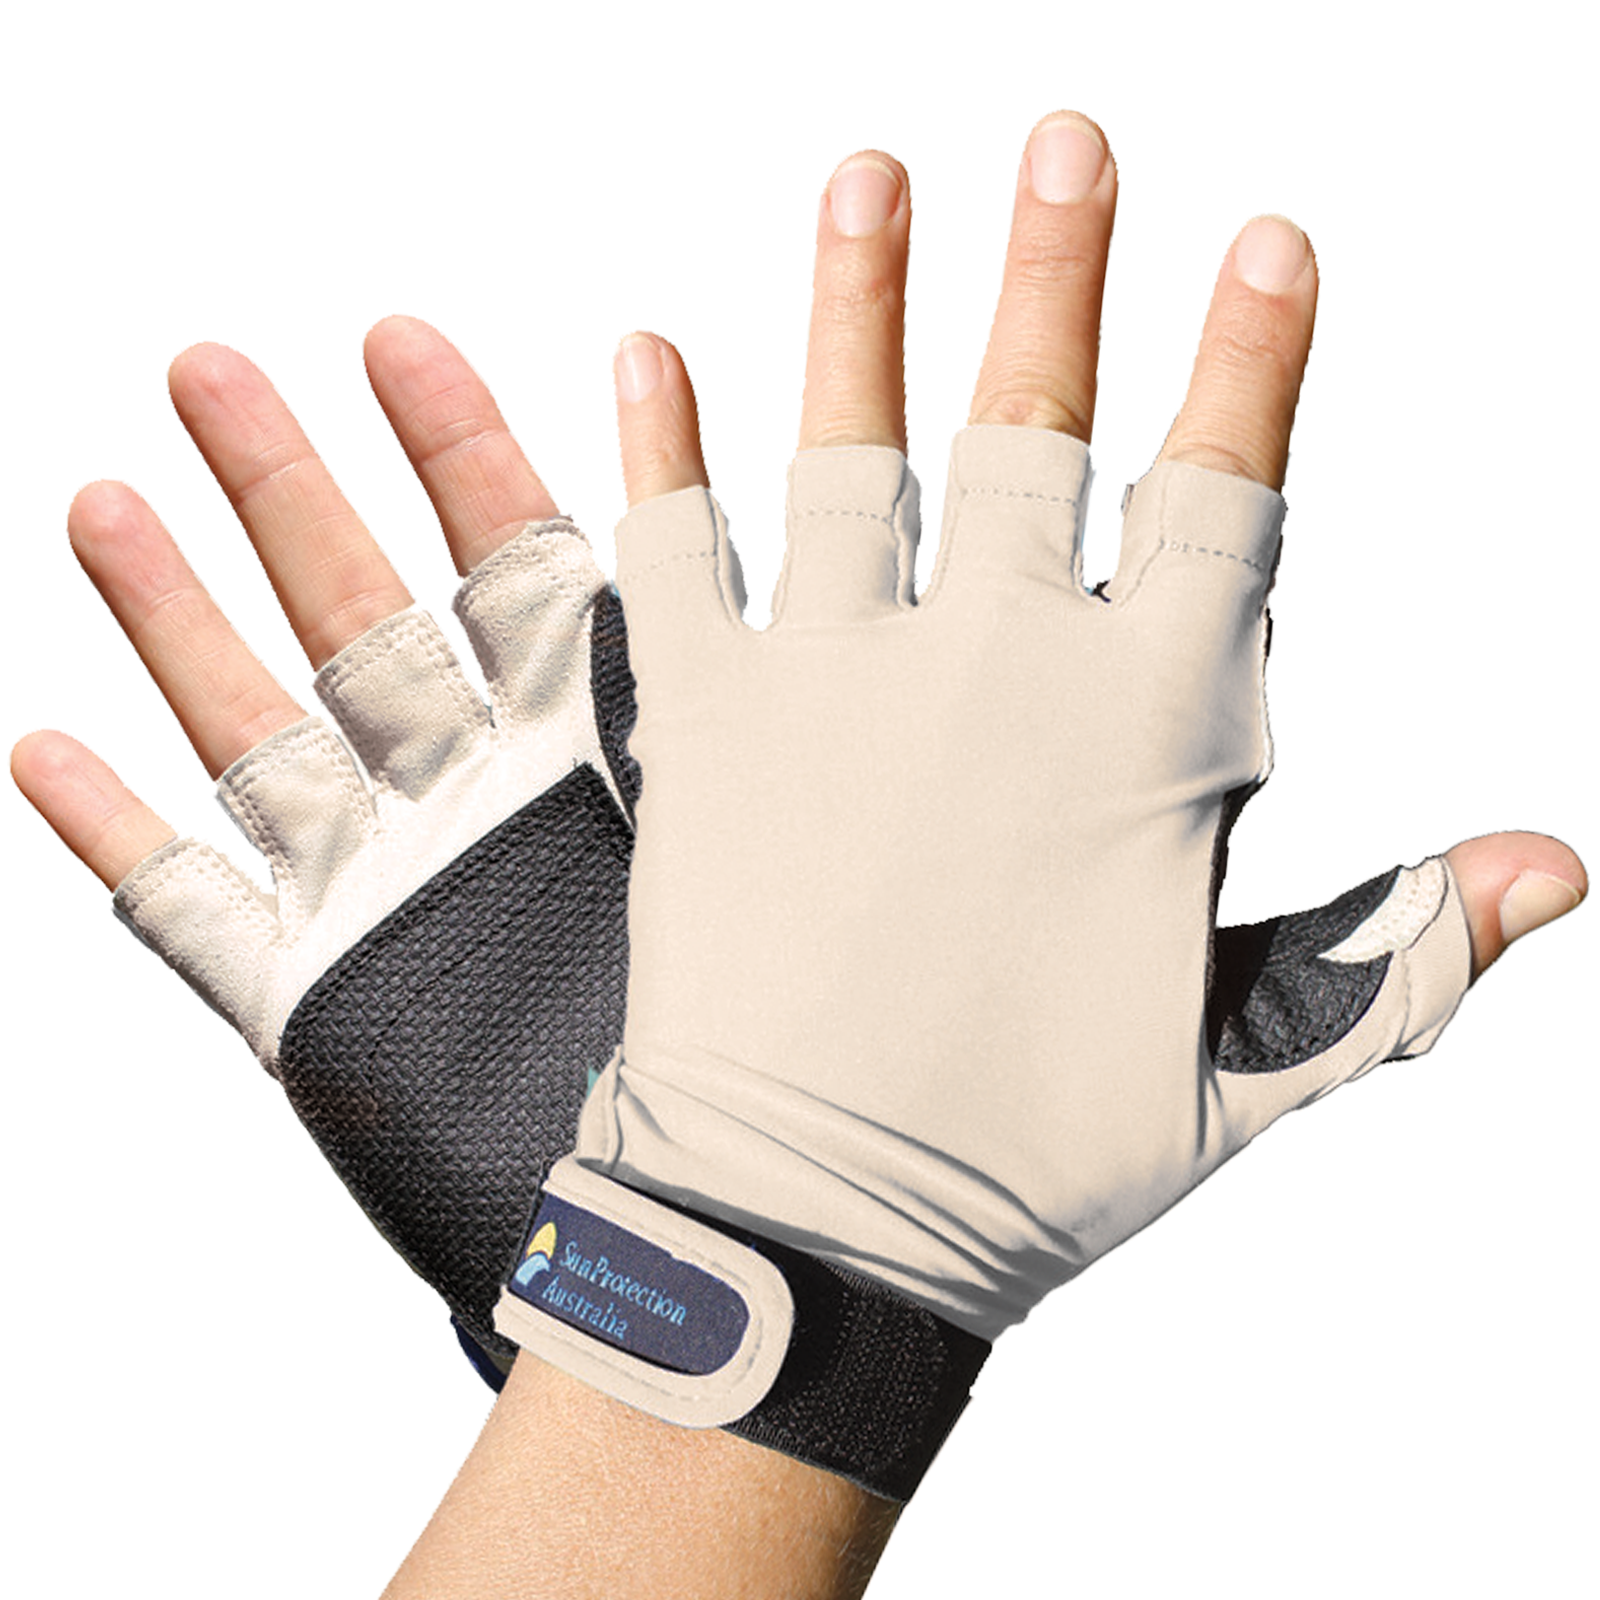 Sun Protection Australia - UPF 50+ Sports Gloves